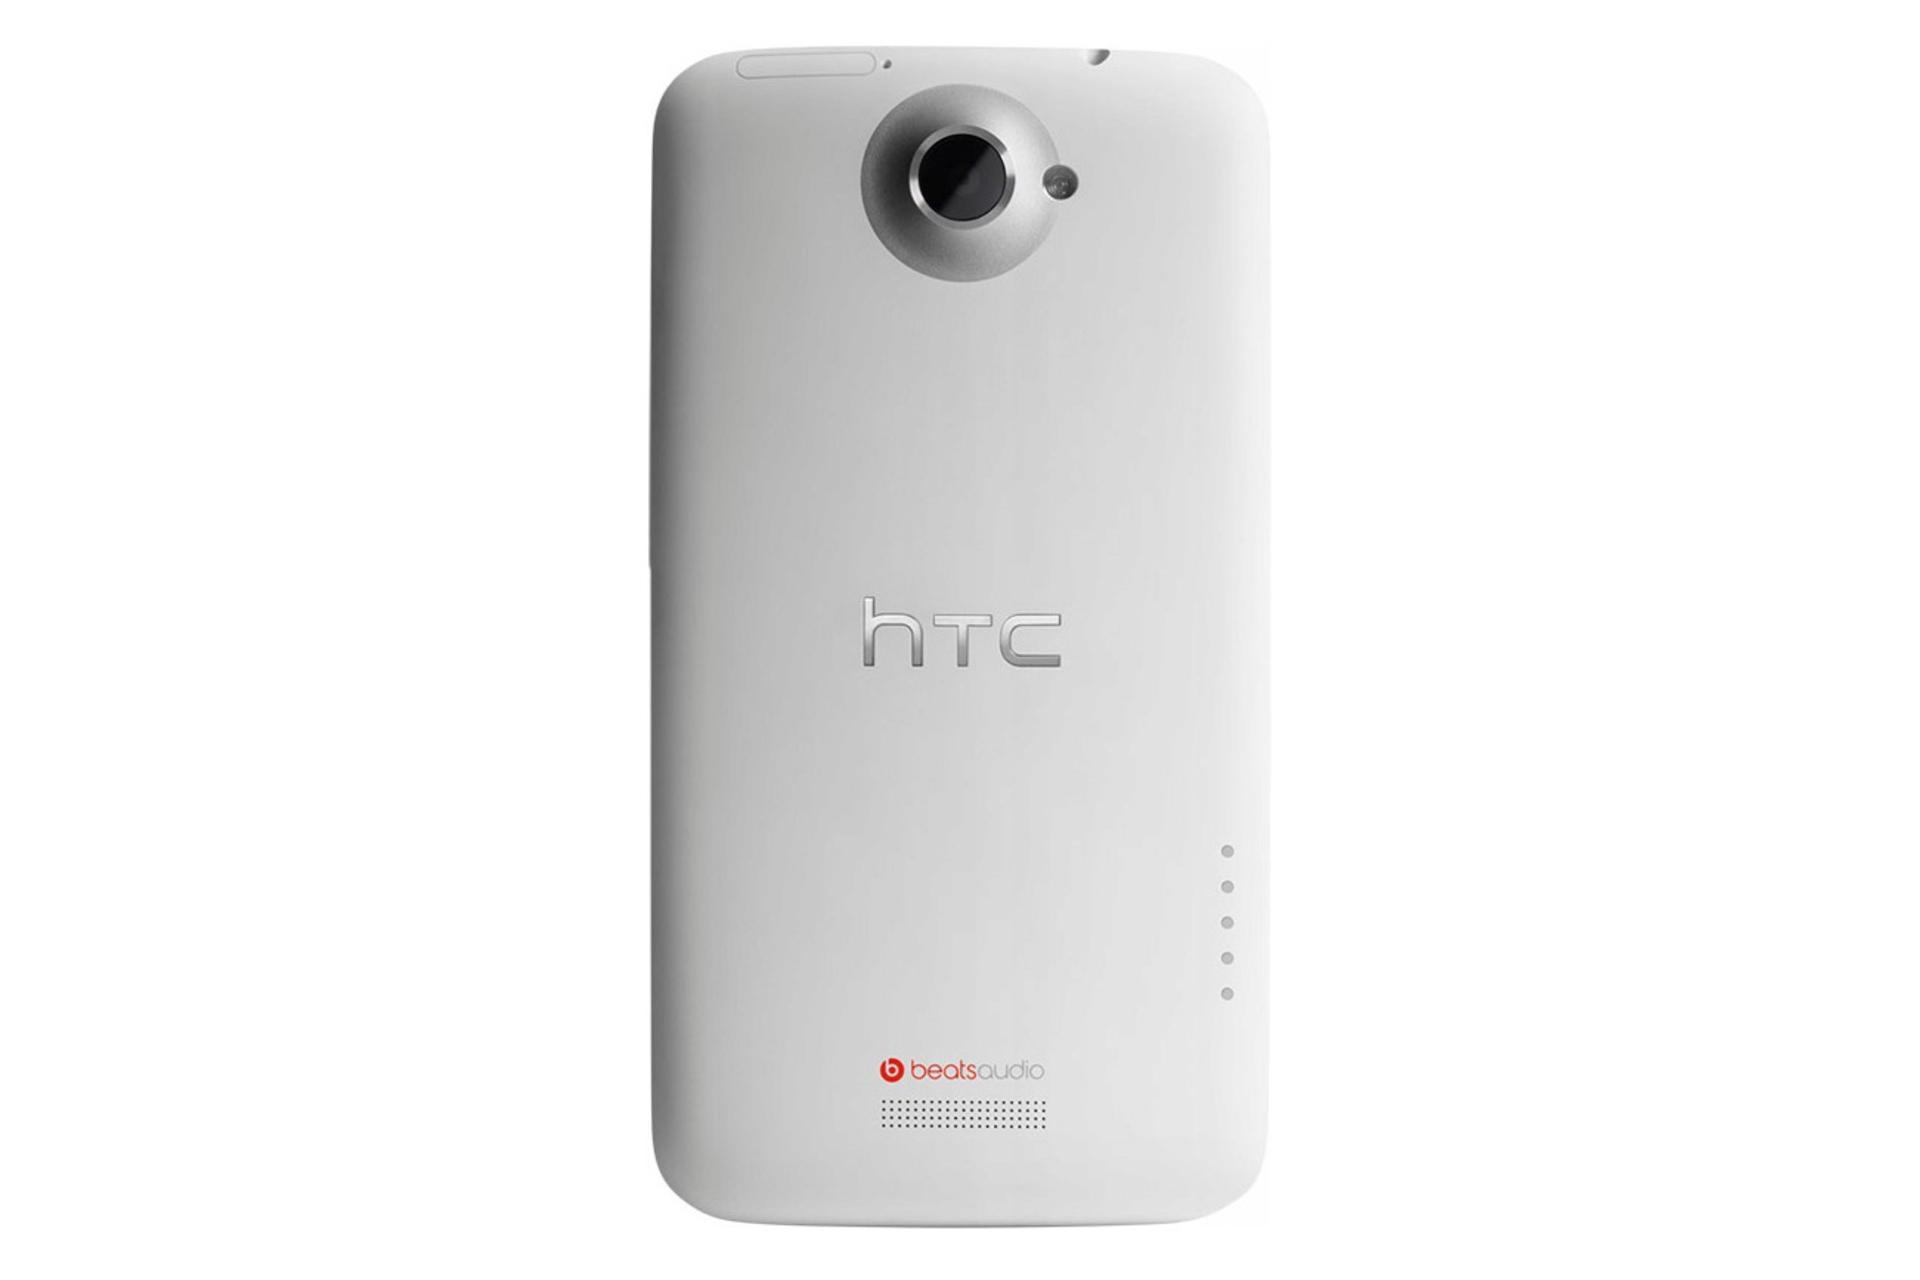 دوربین وان X پلاس اچ تی سی HTC One X+